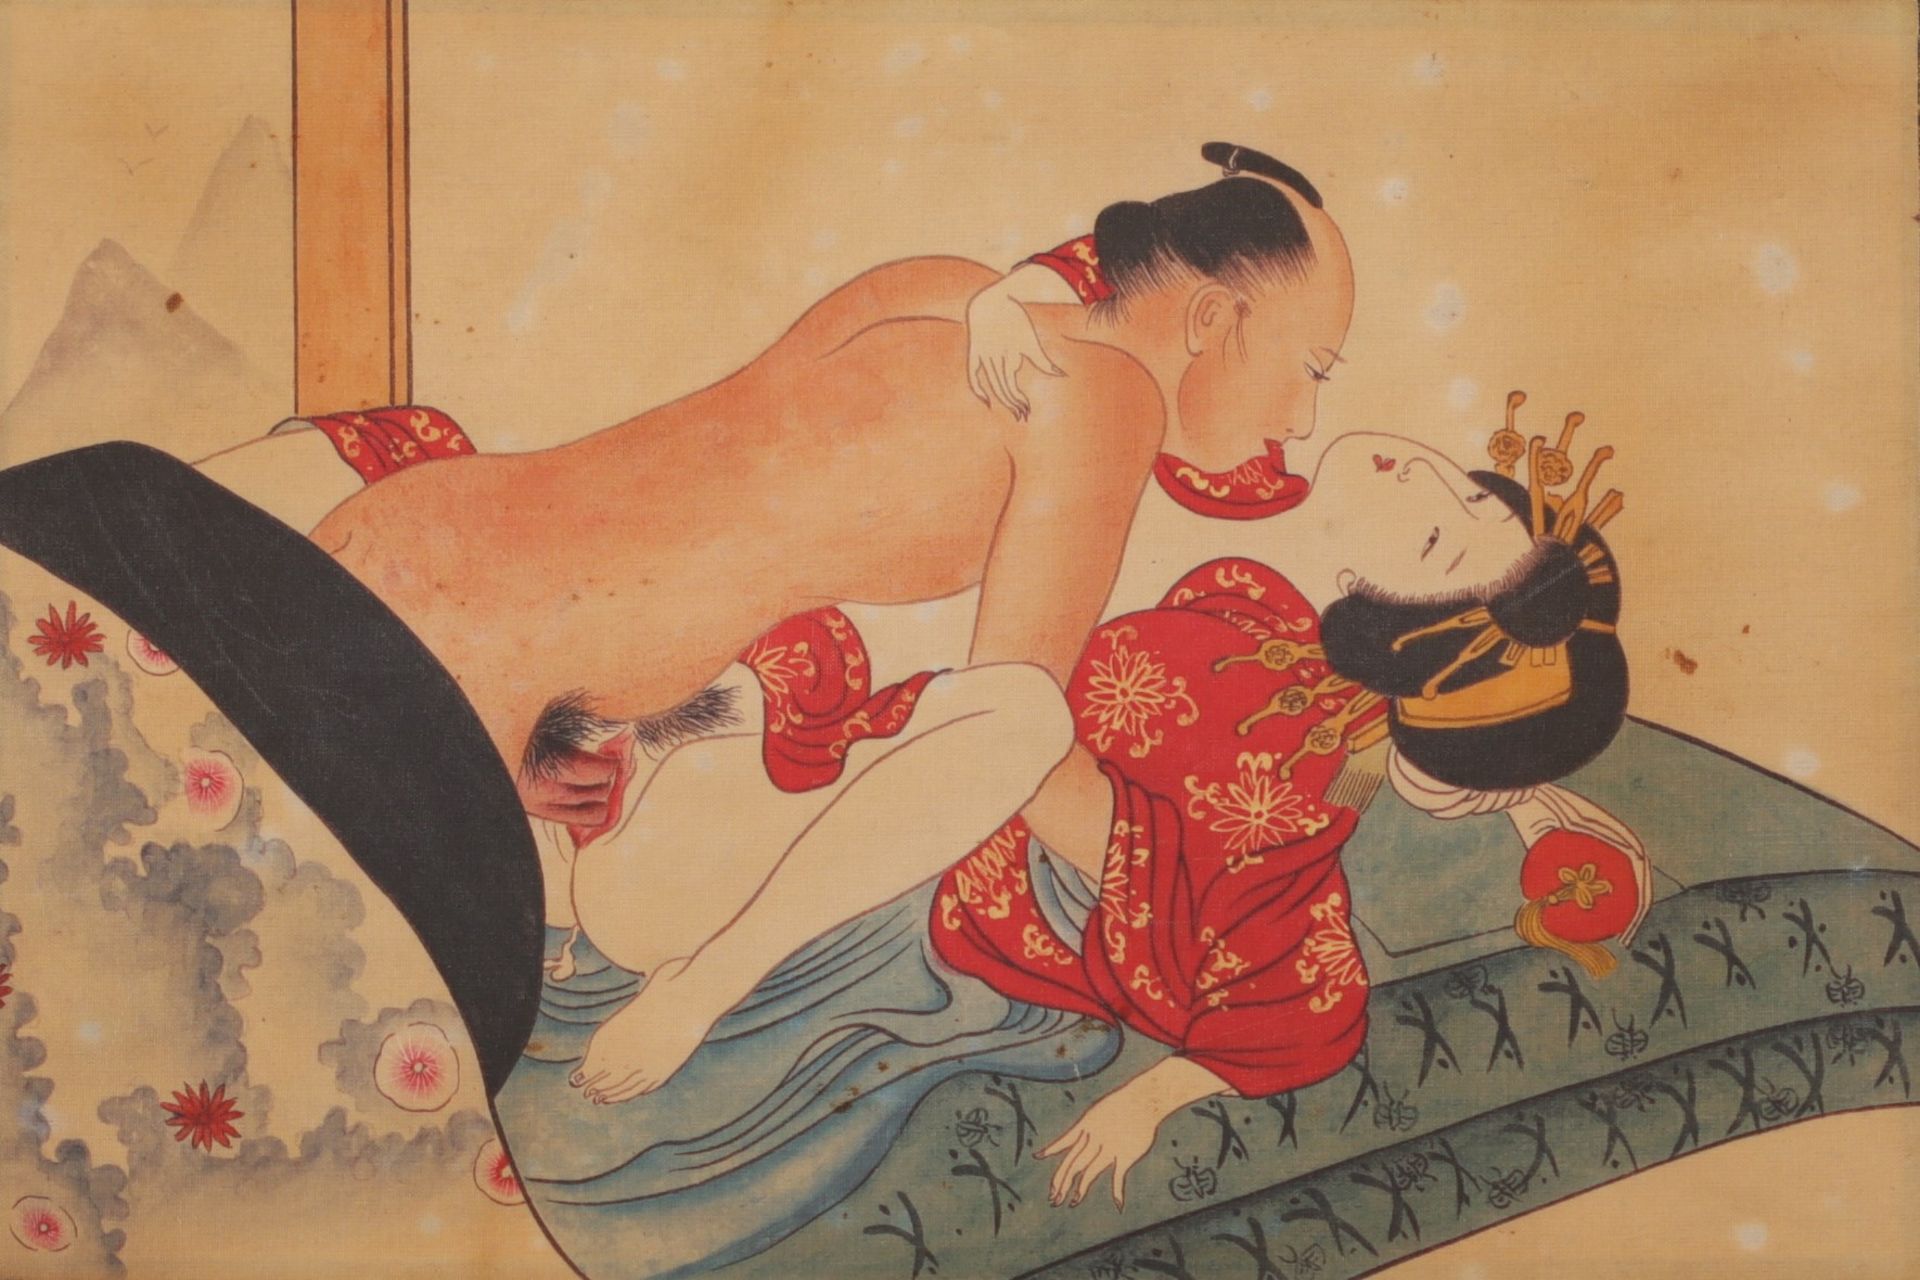 Japan - Erotic print, Meiji period.